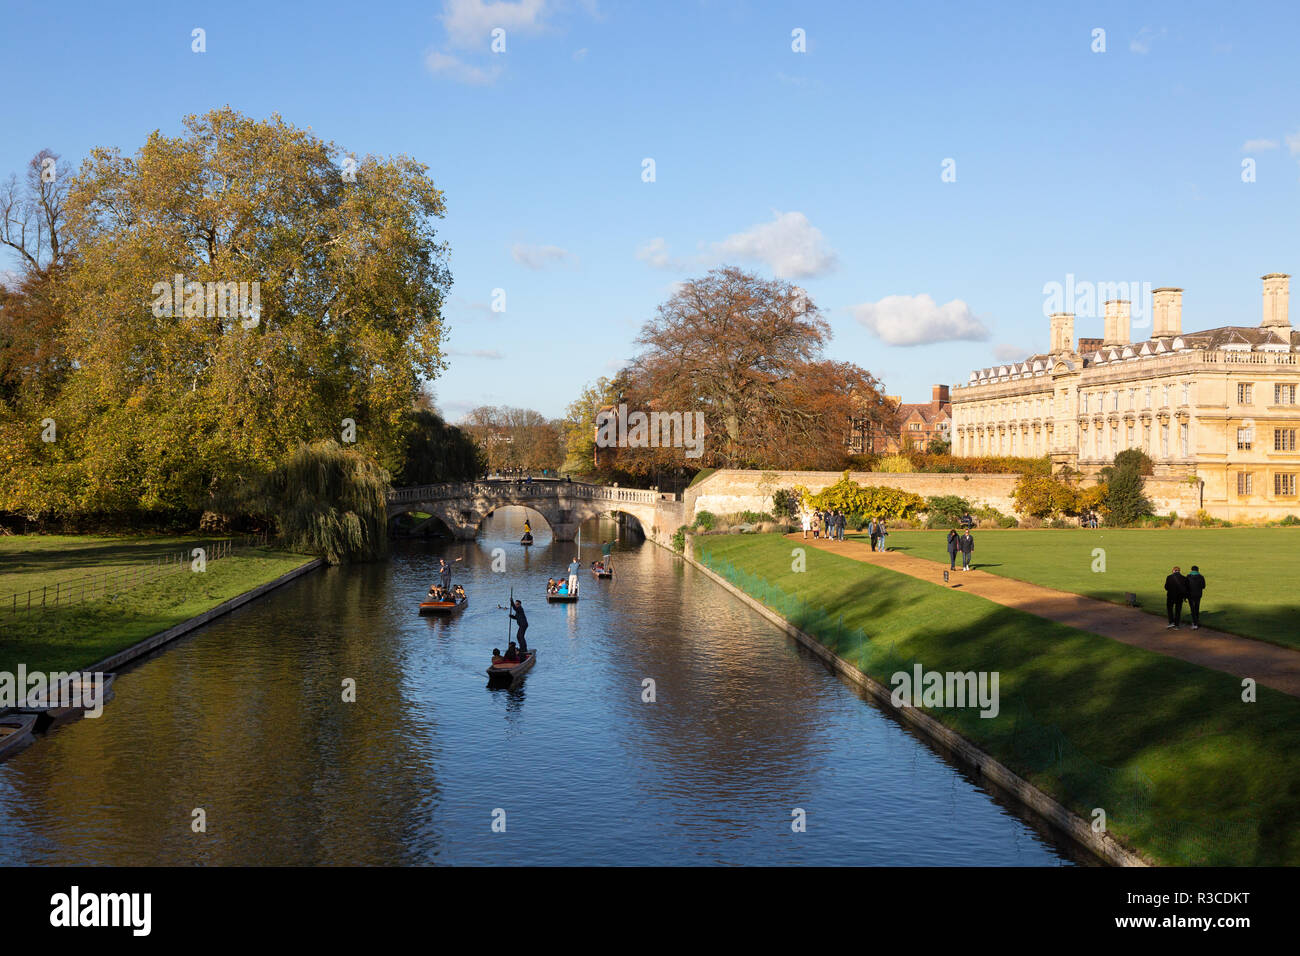 La Universidad de Cambridge en otoño - personas remar por el río Cam en la espalda, con Clare College y Clare bridge; Cambridge, Inglaterra Foto de stock